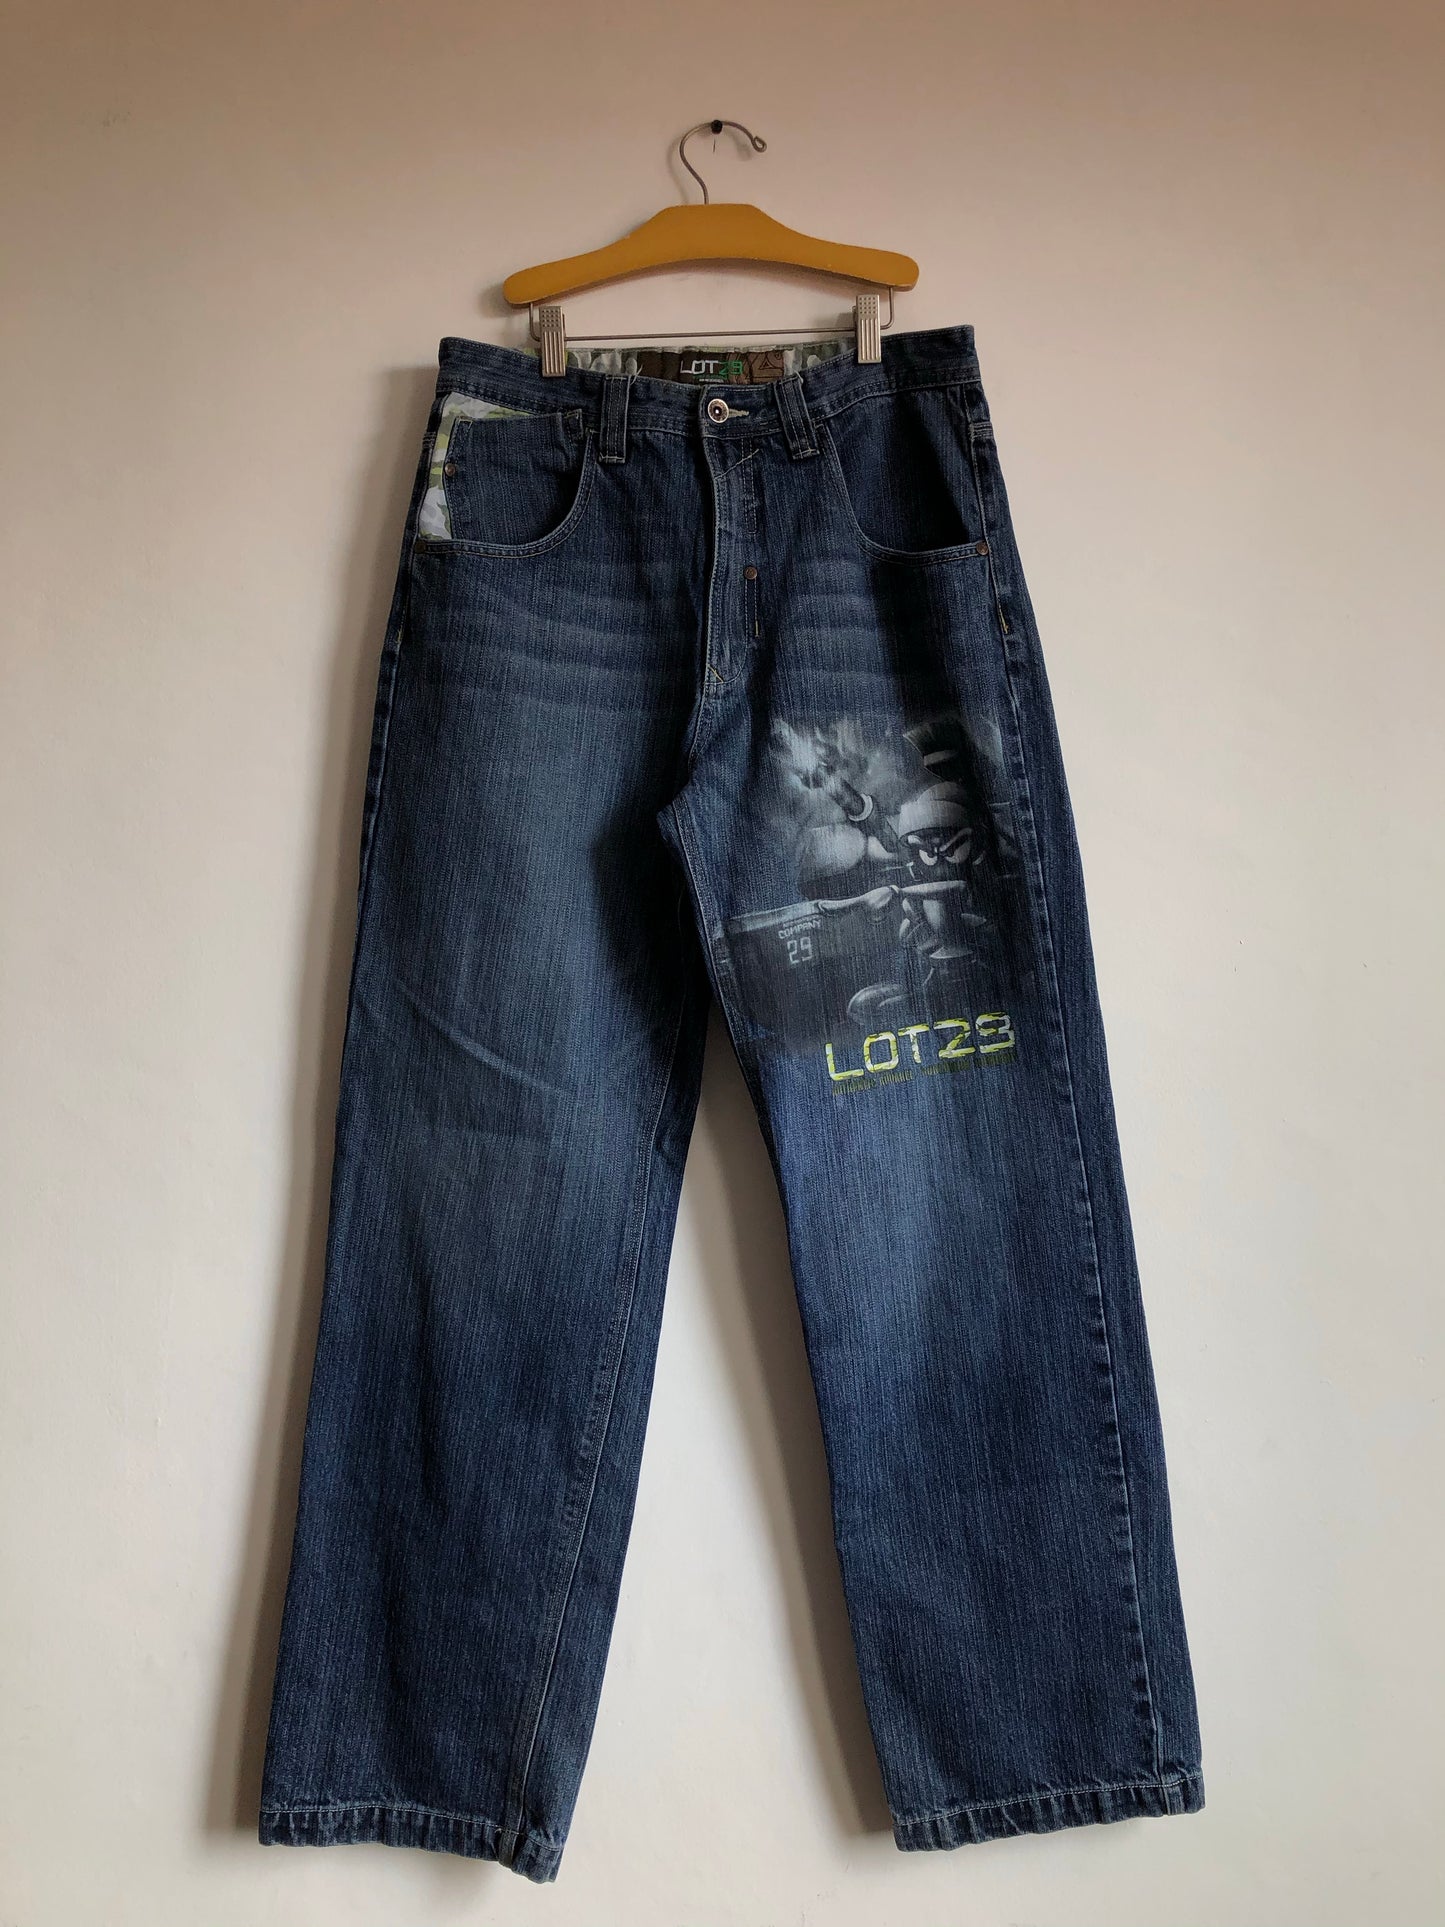 Jeans Lot 29 00’s